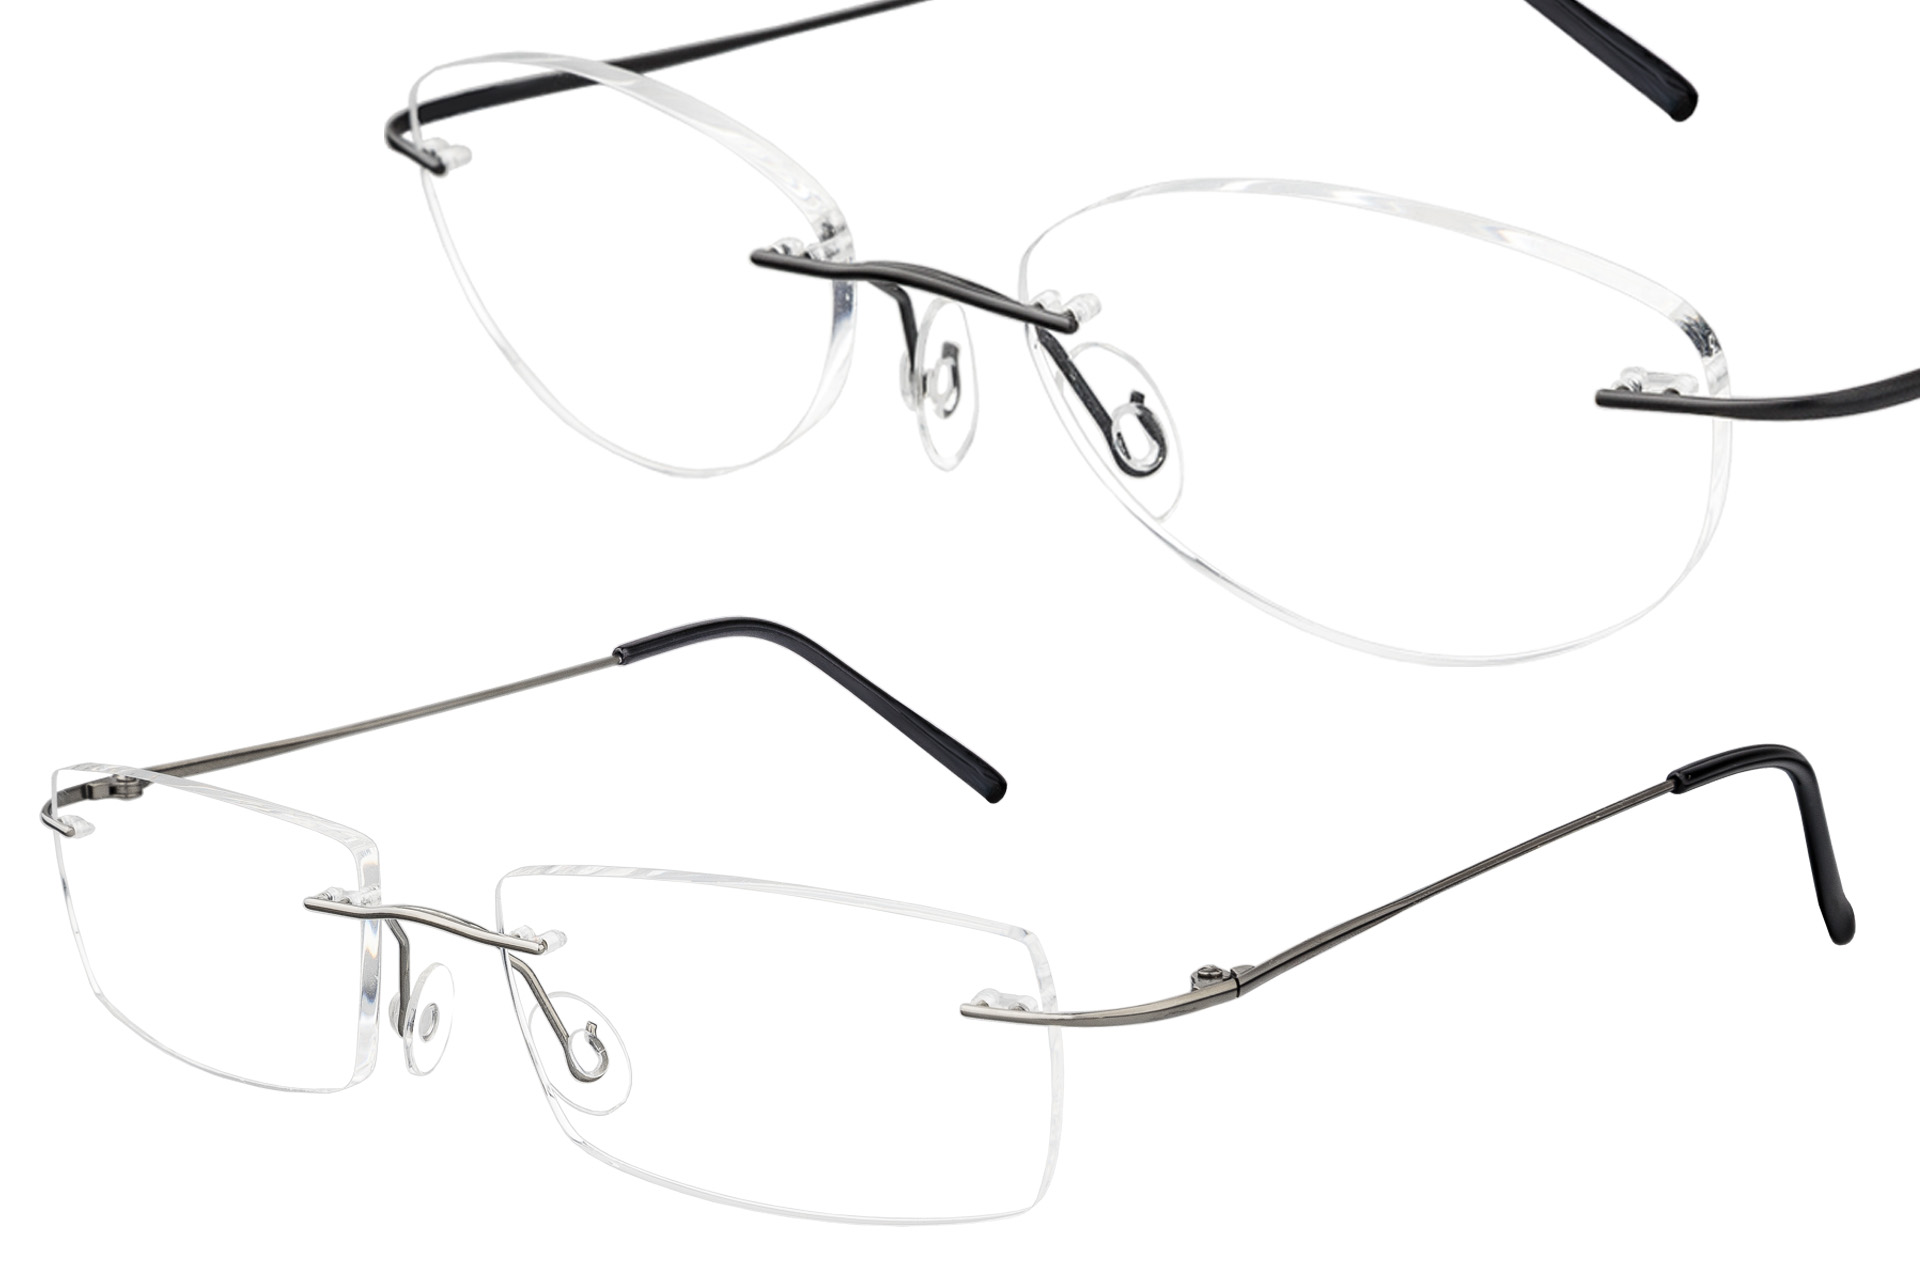 Packshots of glasses